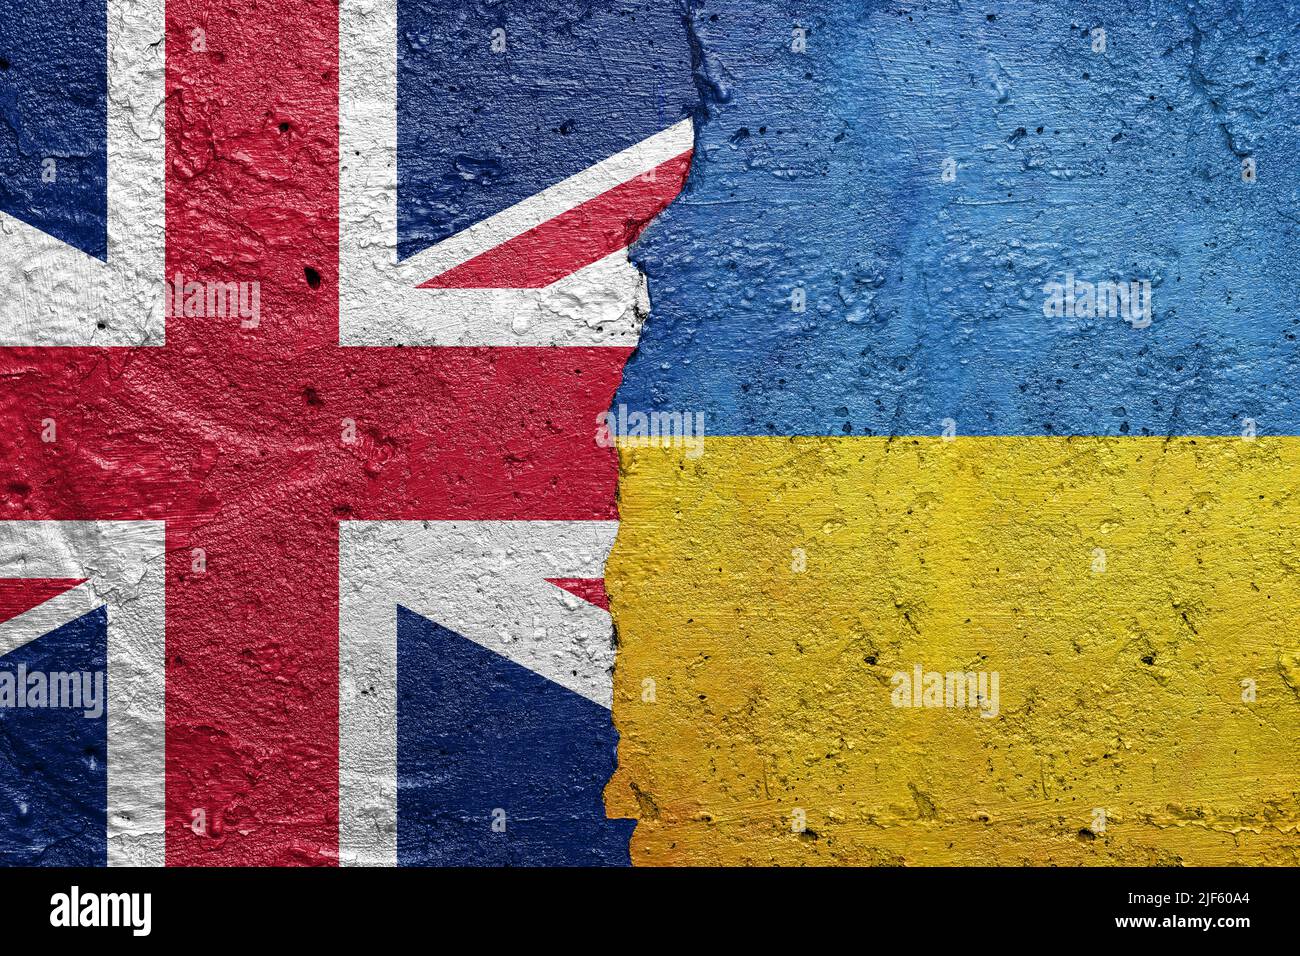 Drapeau britannique de l'Angleterre et de l'Ukraine - mur en béton fissuré peint avec un drapeau britannique à gauche et un drapeau ukrainien à droite Banque D'Images